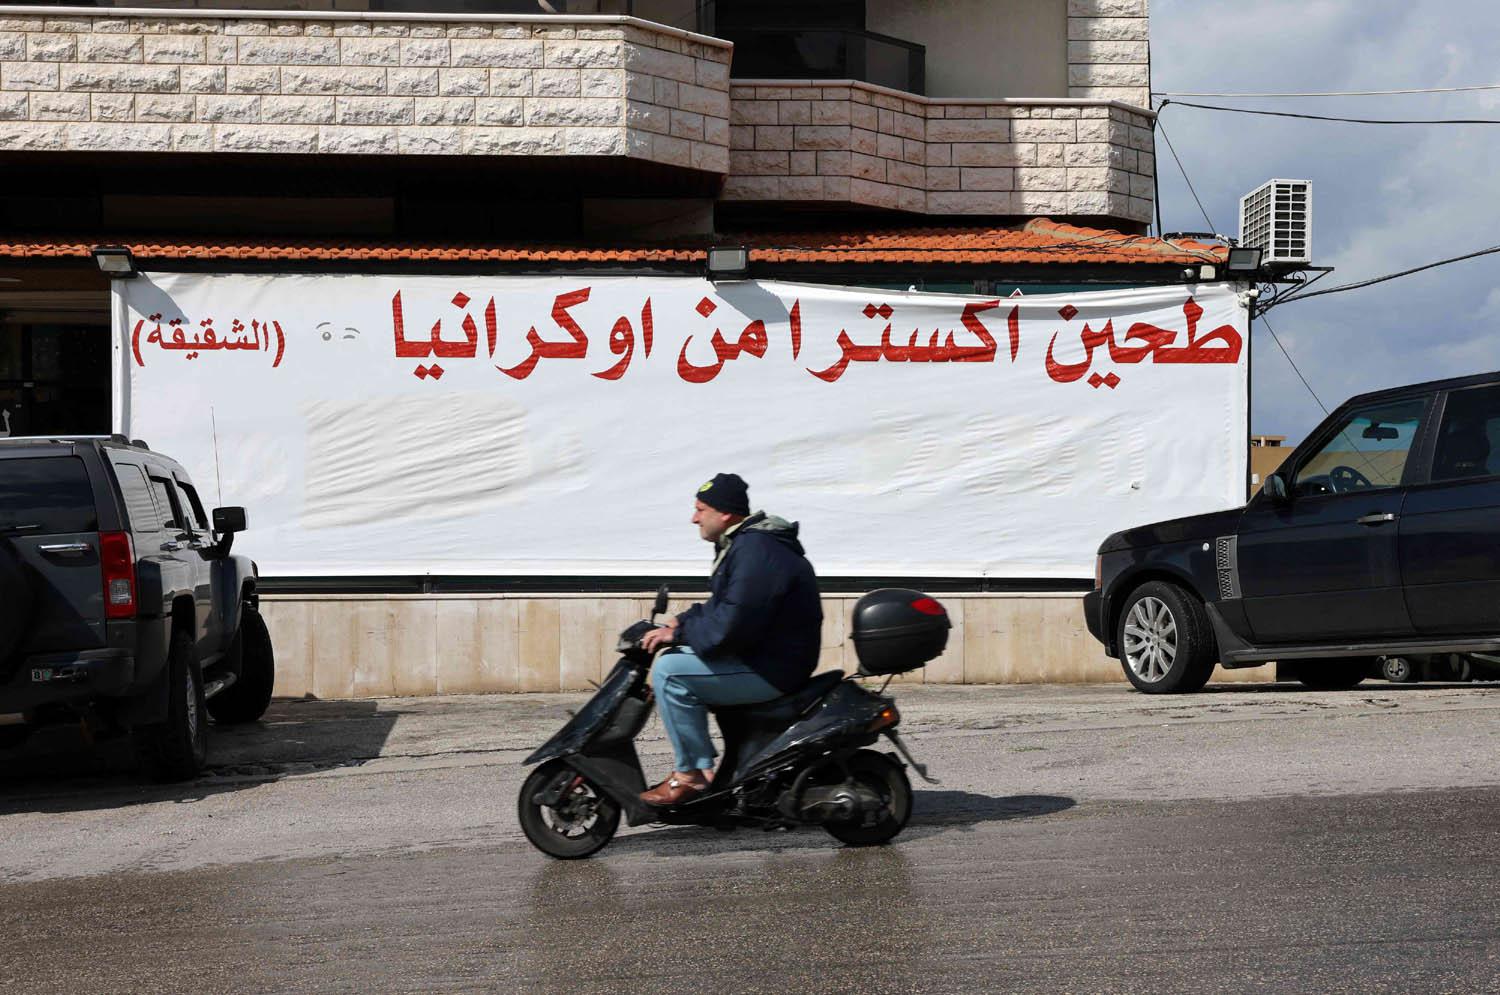 اعلان عن طحين اوكراني في لبنان